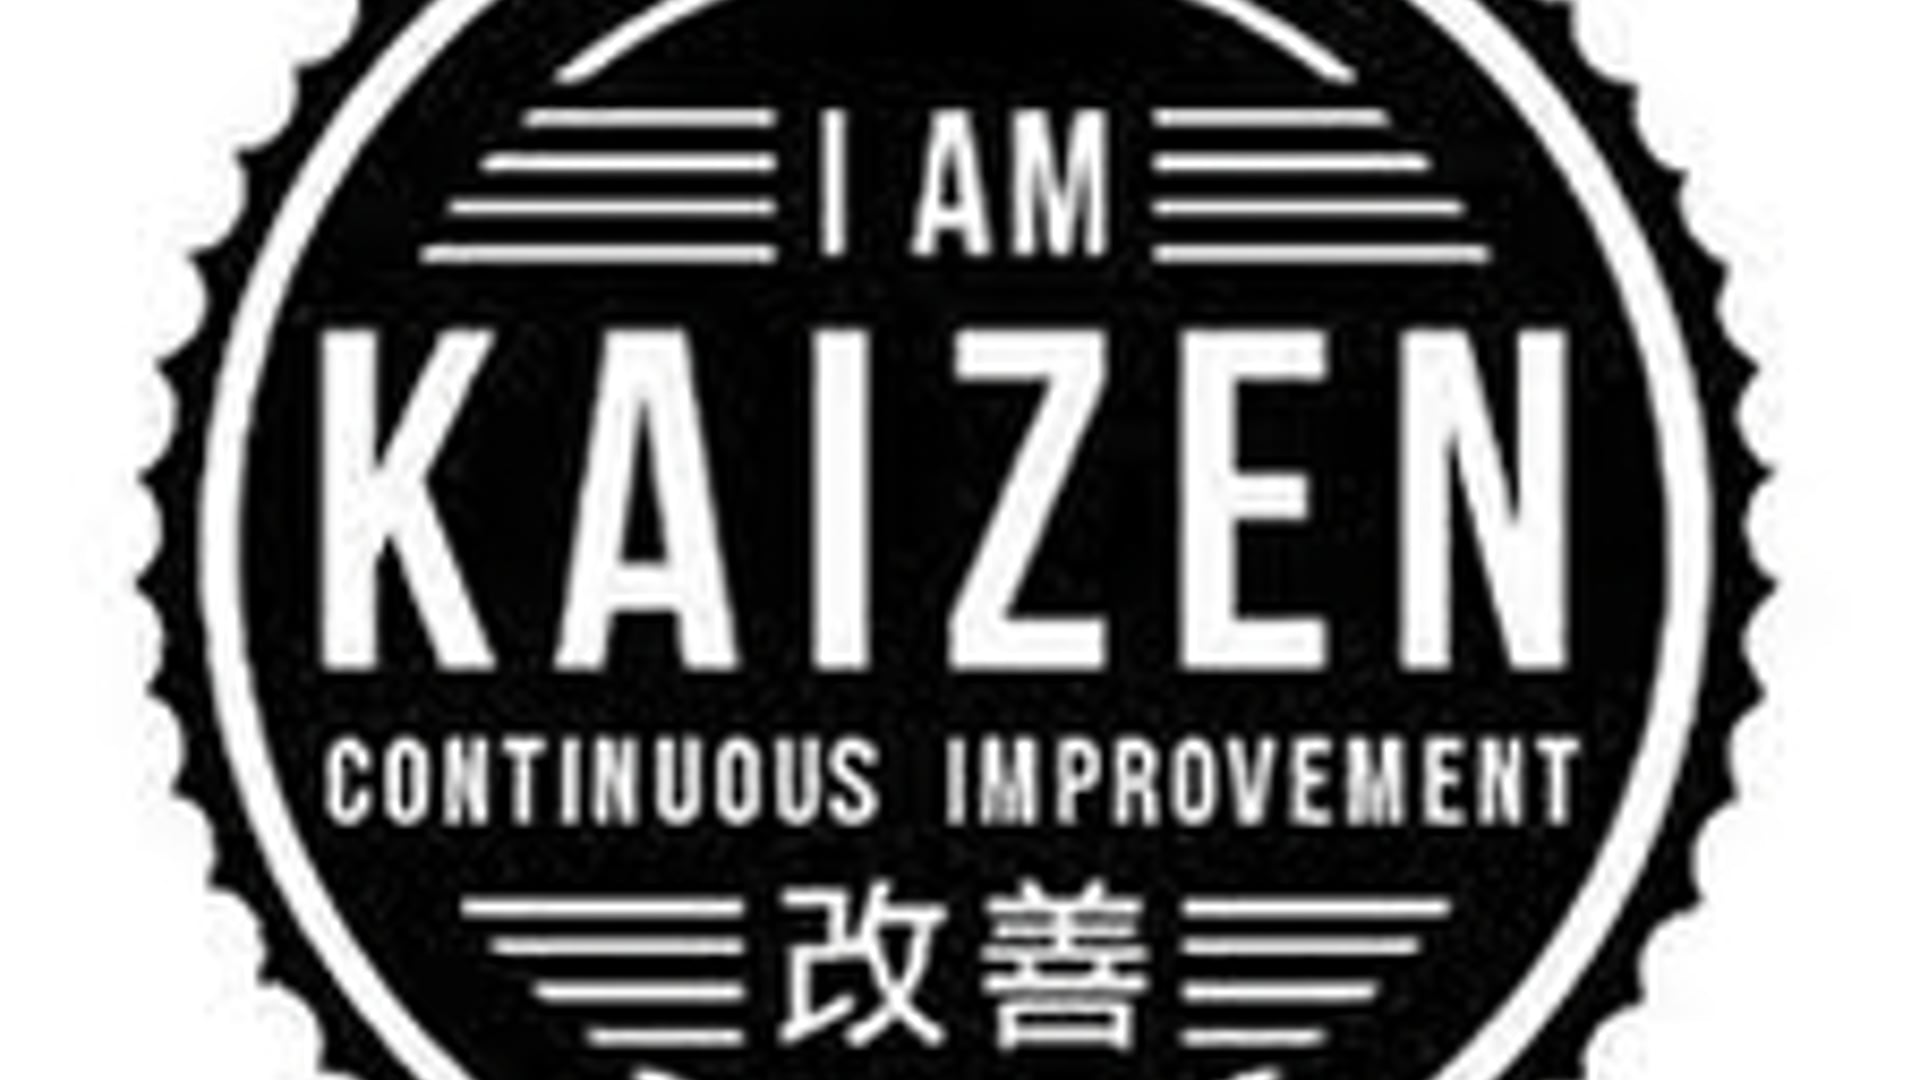 KAIZEN  Melhoria Contínua  - Qualidade & Produtividade